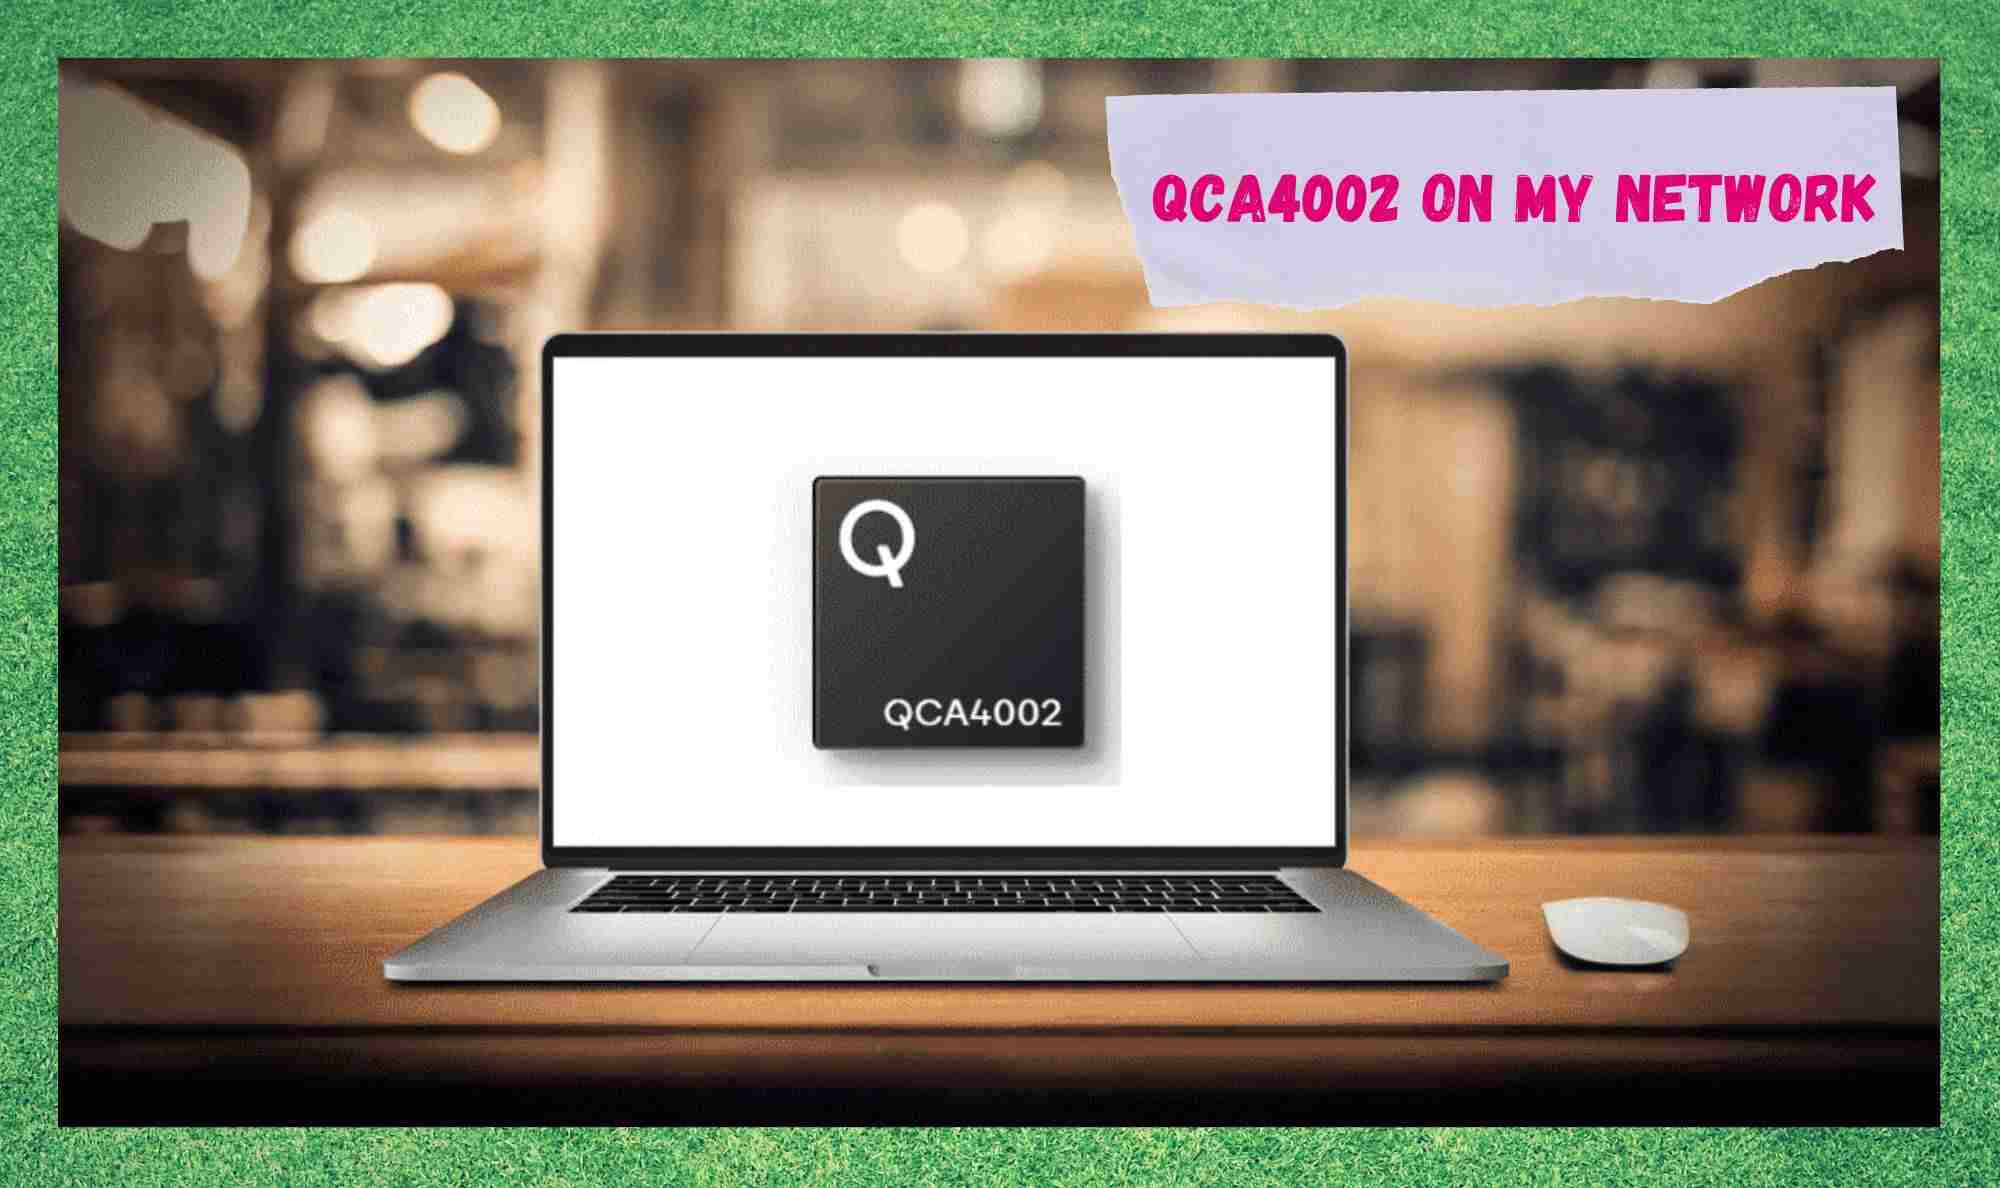 म किन मेरो नेटवर्कमा QCA4002 हेर्दै छु?